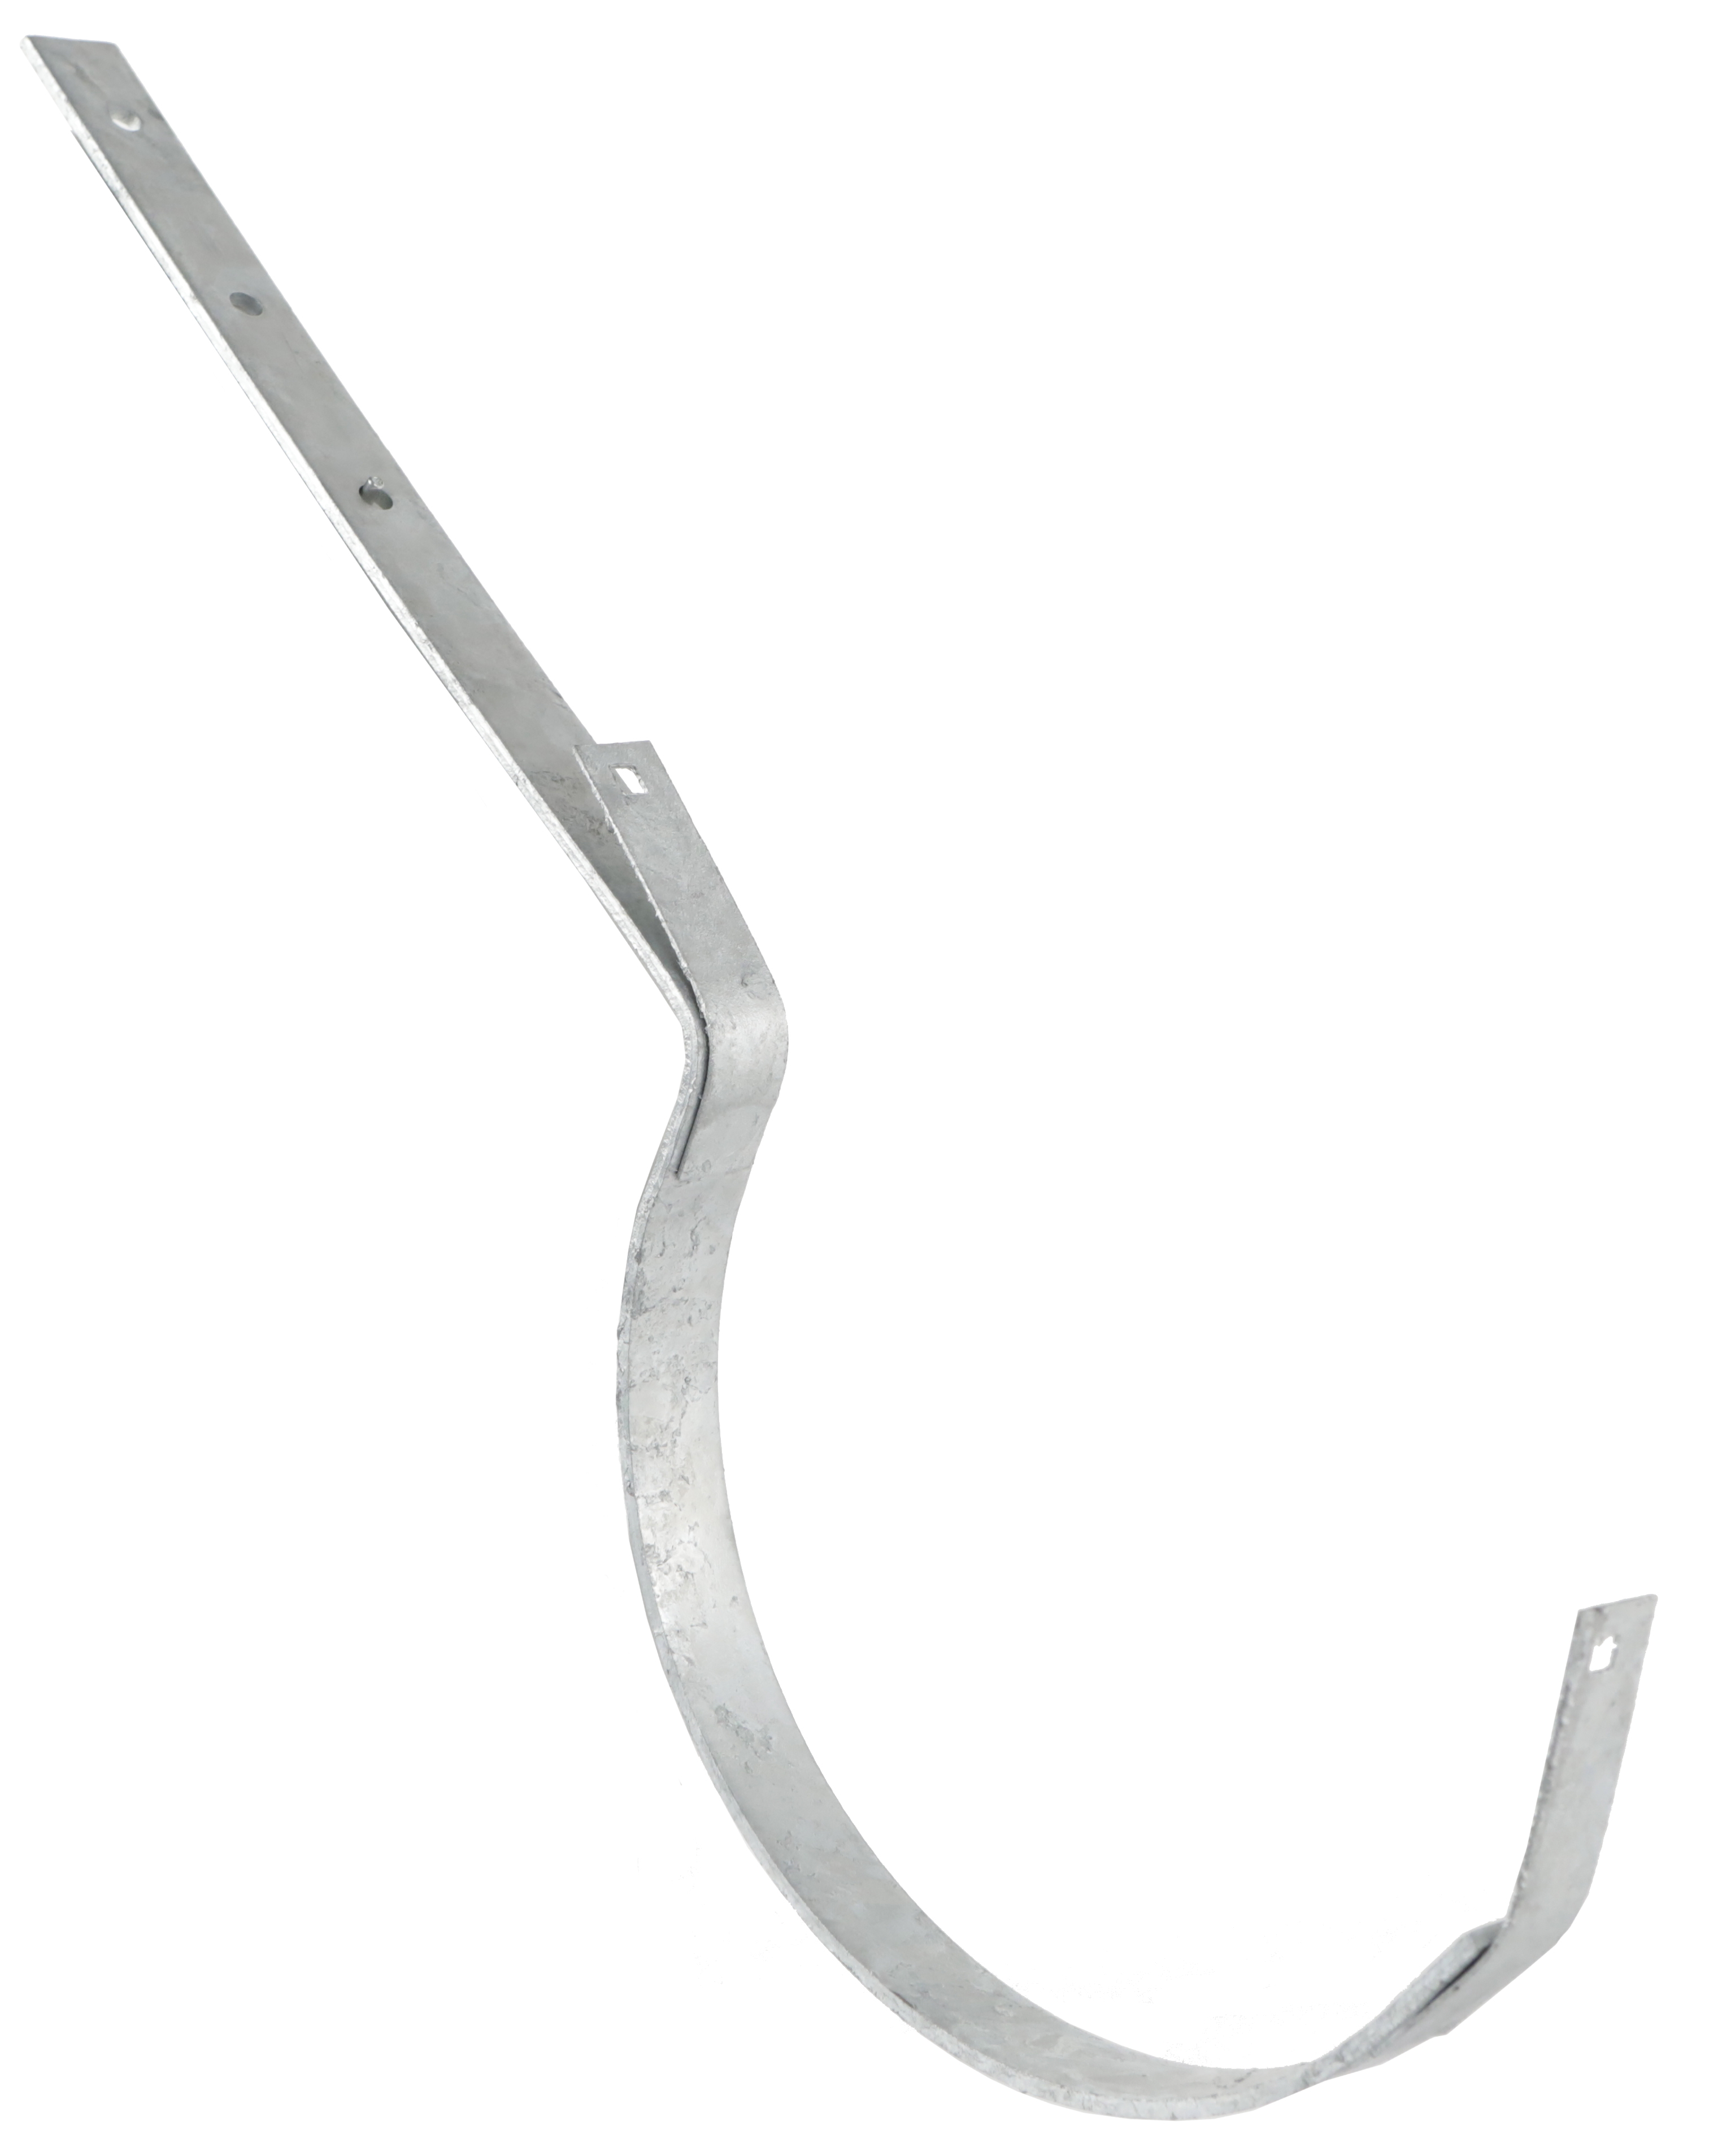 Gutter hook Montpellier deviation 33, 25 cm galvanized steel rod